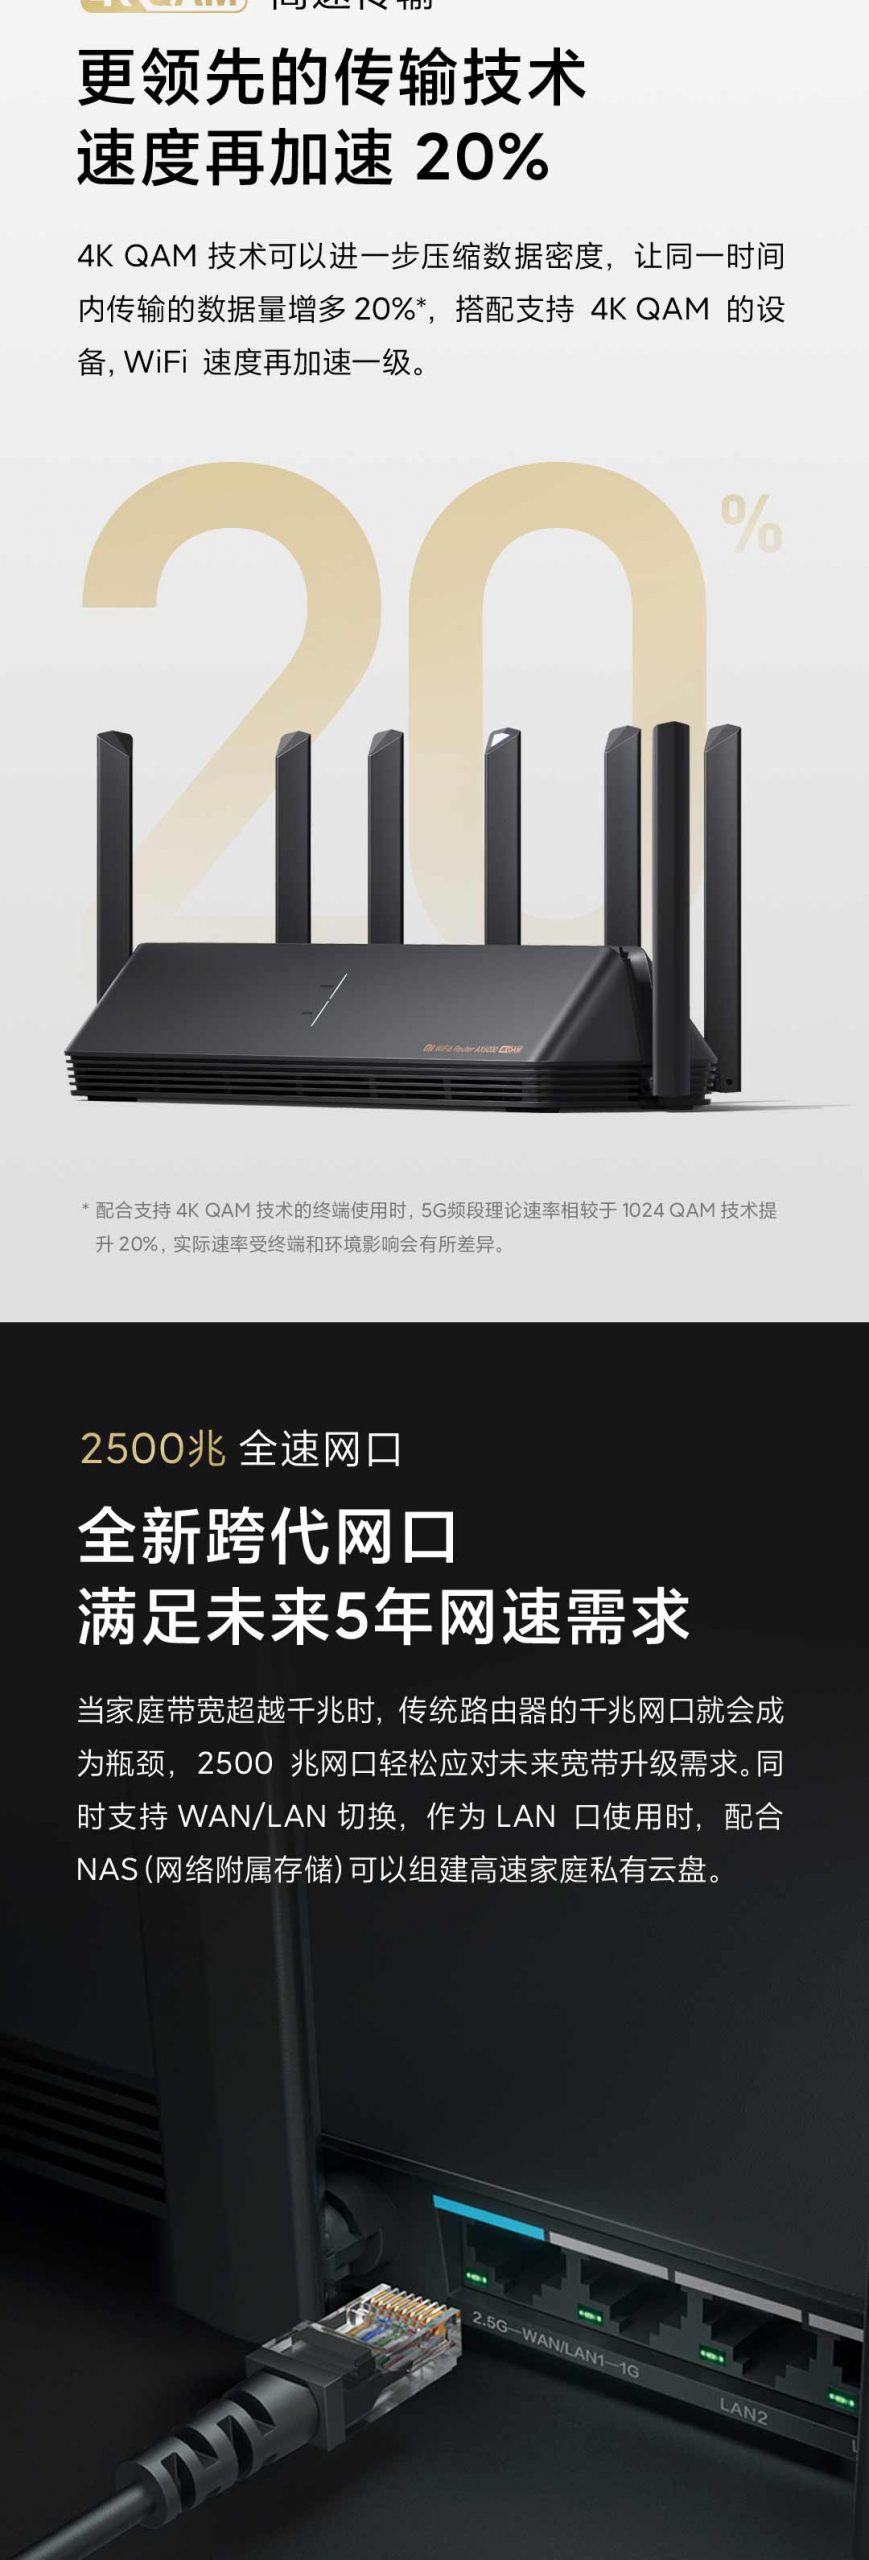 product_奇妙_小米路由器AX6000